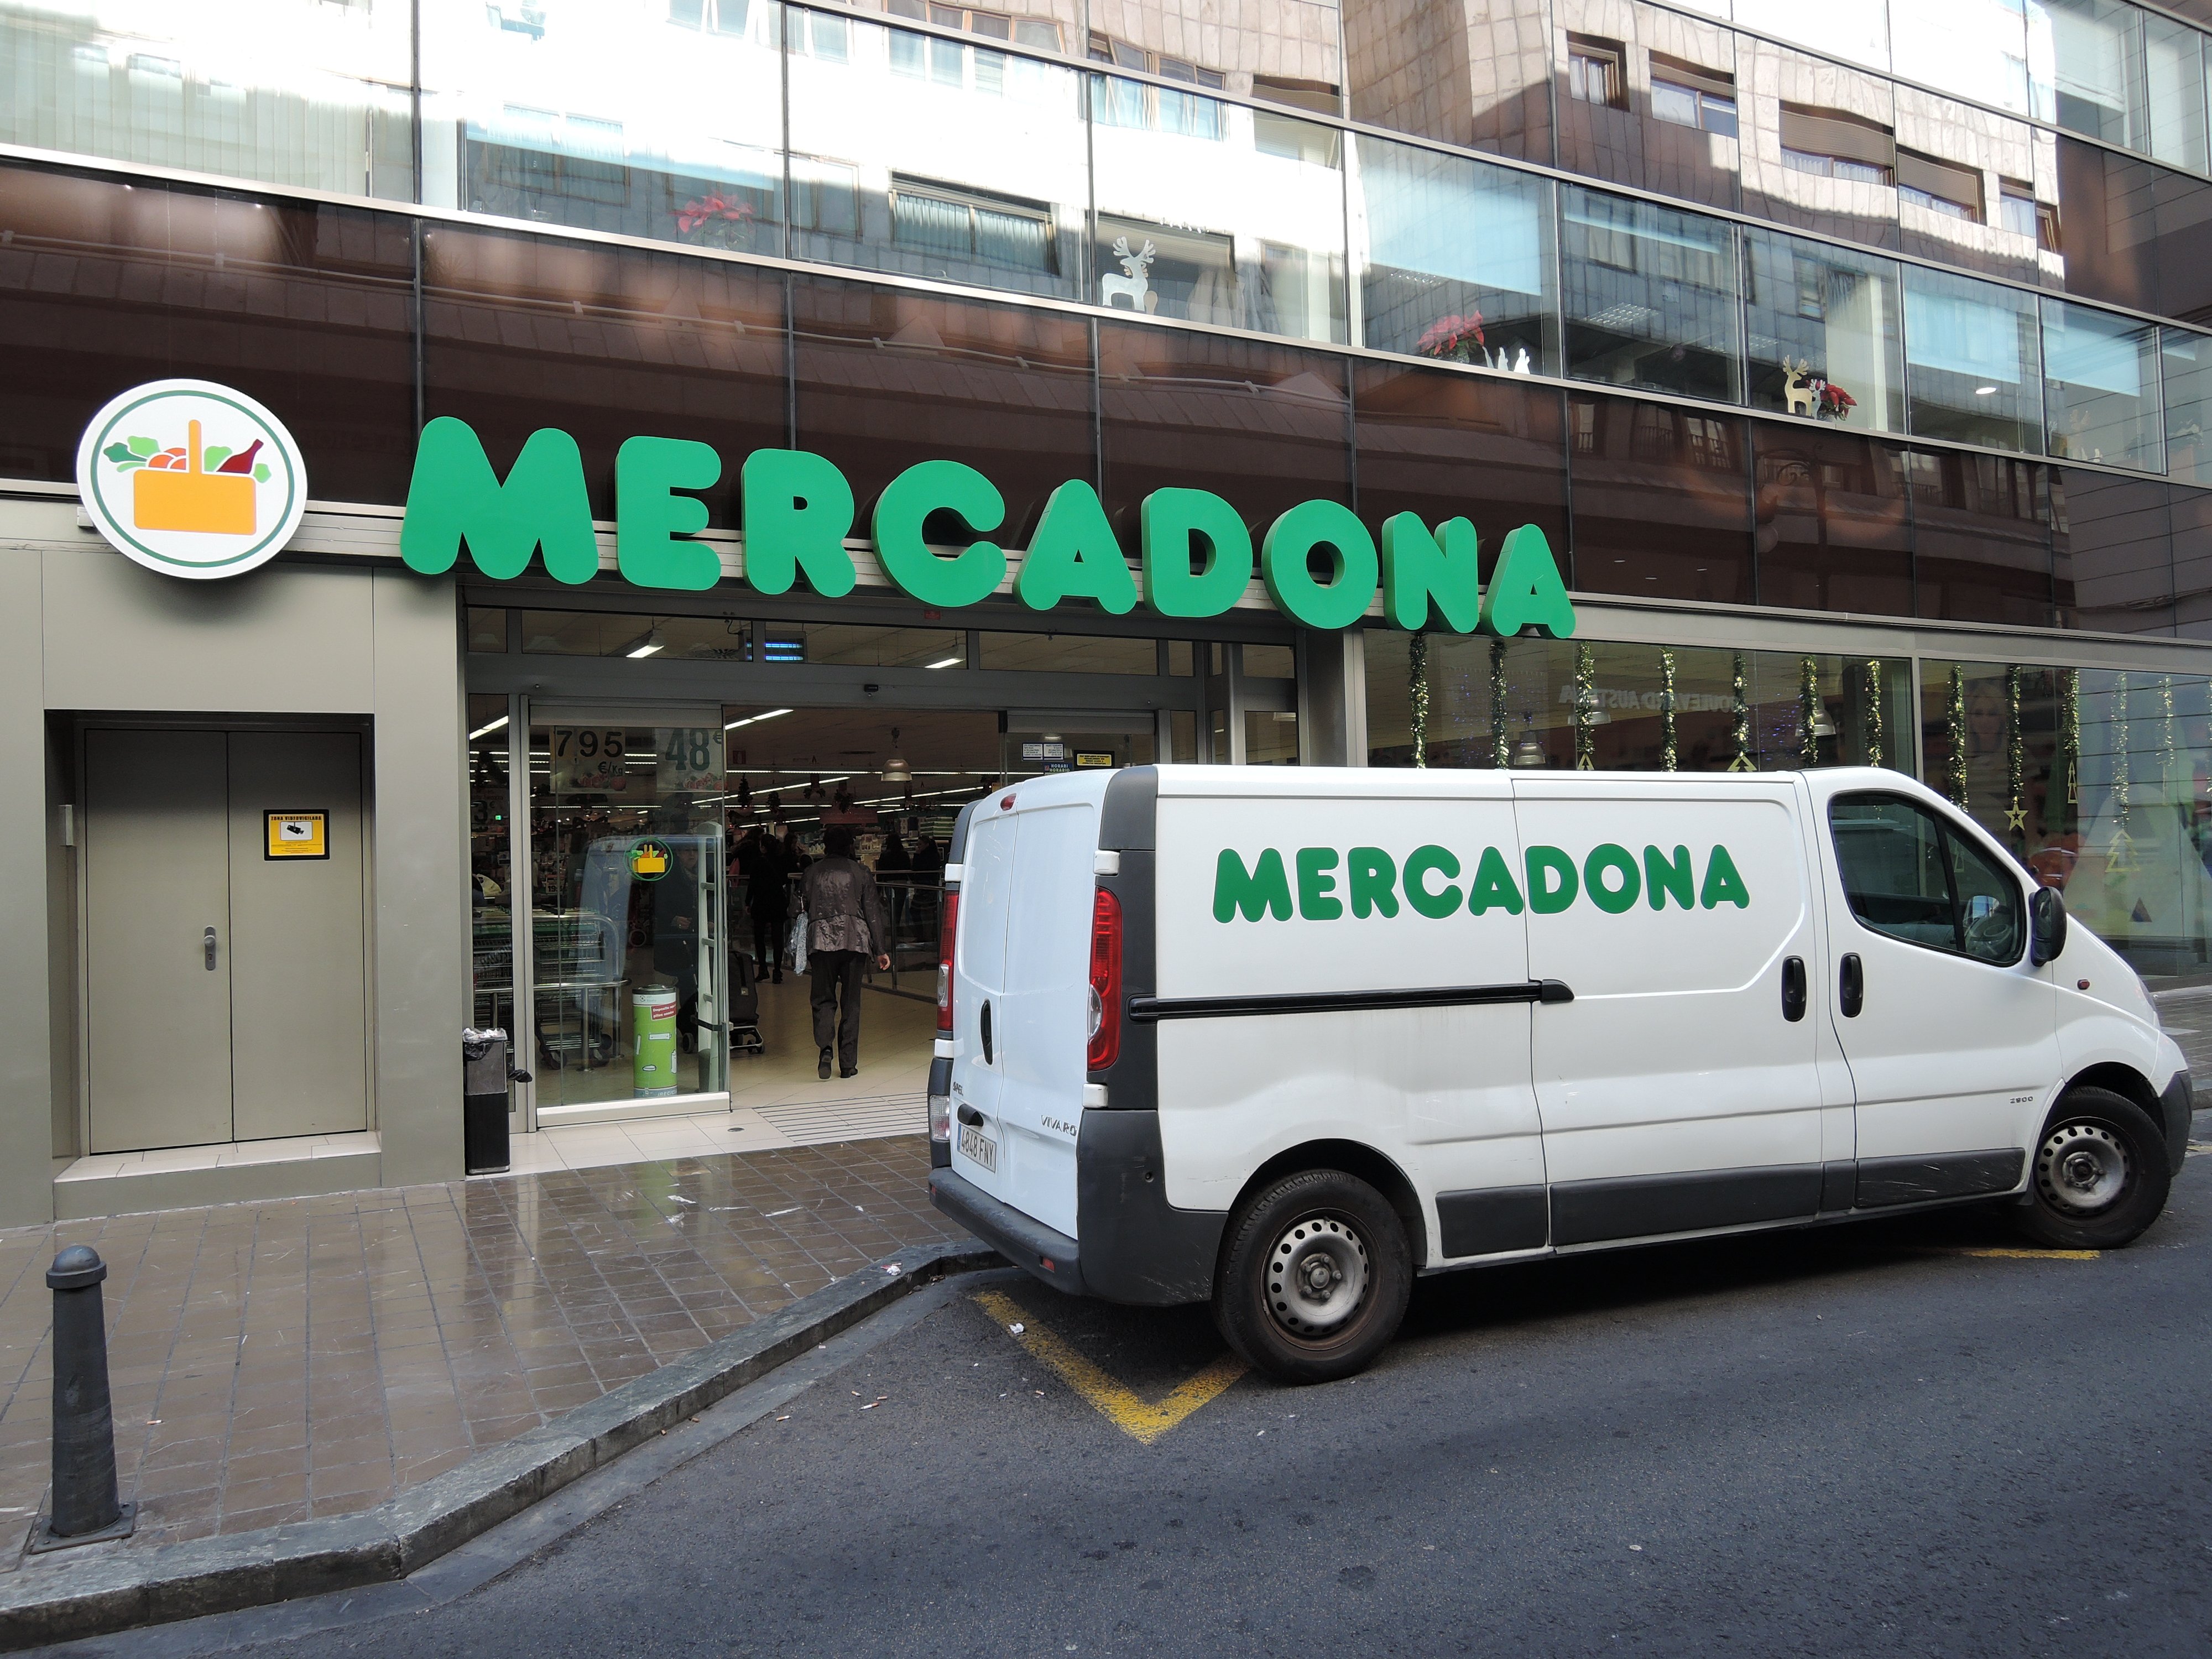 Más inversiones en Barcelona: Mercadona abre un nuevo centro logístico